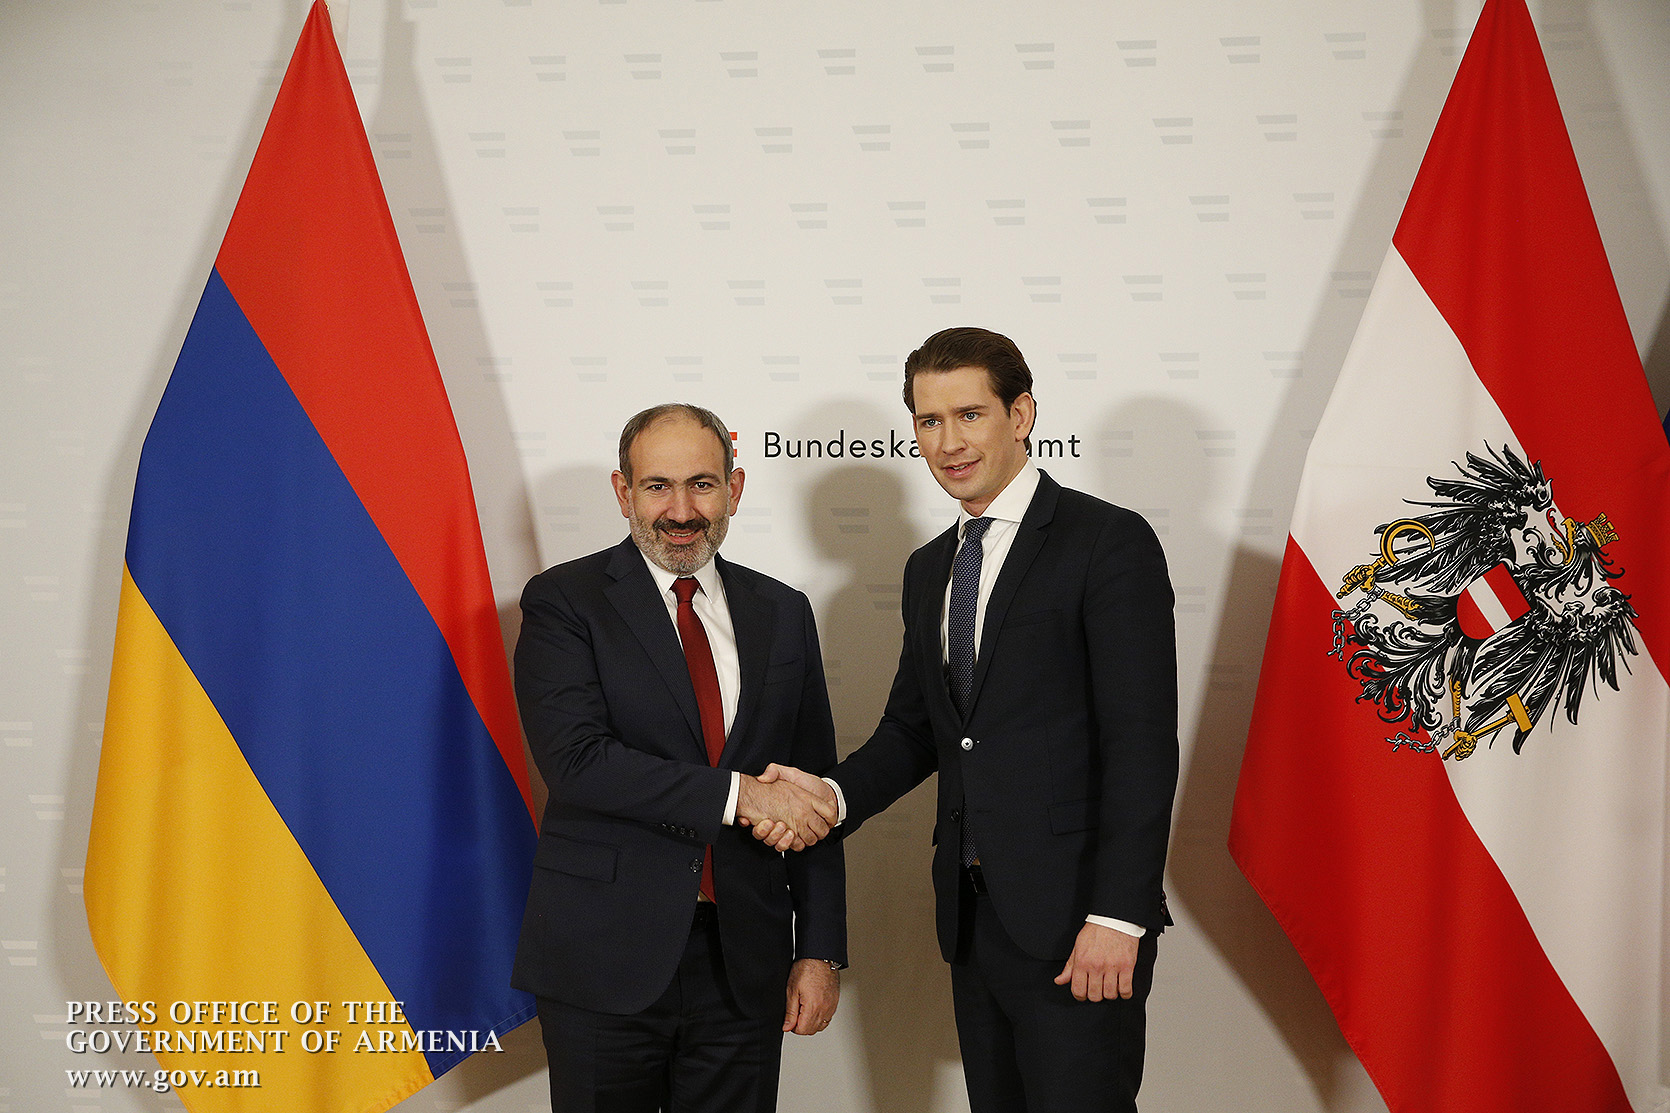 Австрия готова оказать необходимую помощь для эффективной реализации реформ в Армении